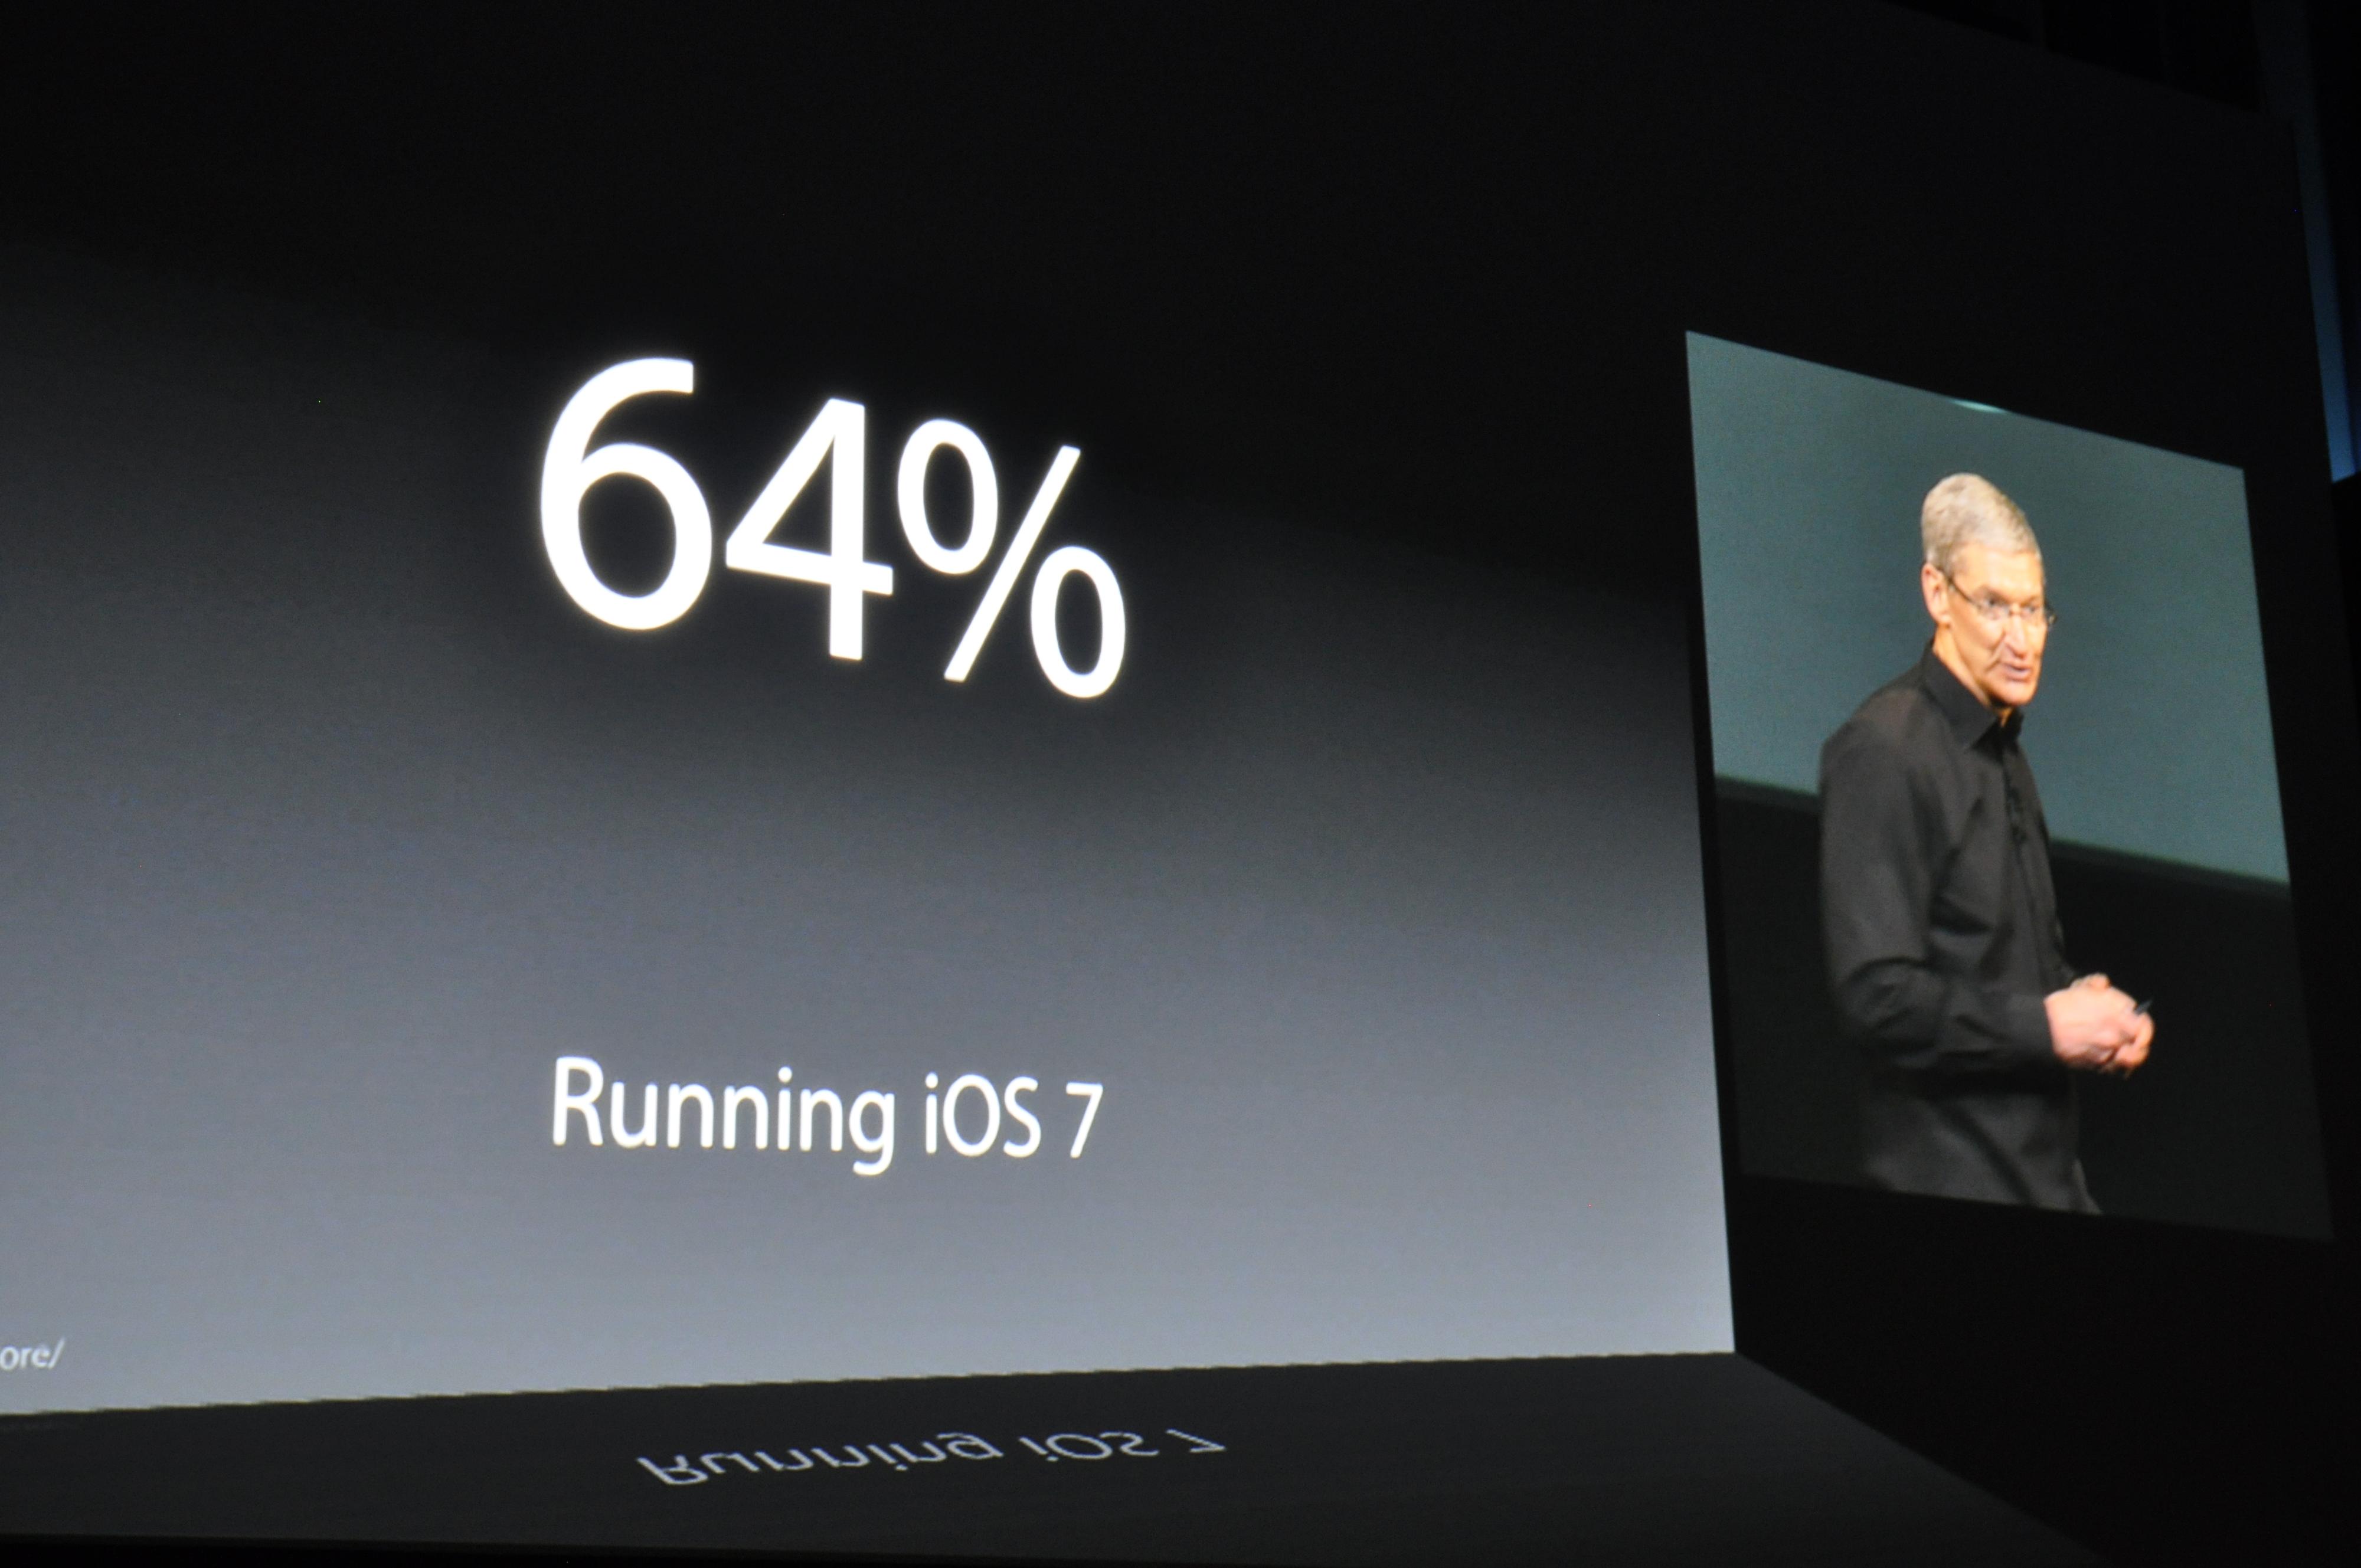 Hele 64 prosent av iOS-brukerne har oppgradert til nyeste versjon. Det skal være historiens raskeste oppgradering, ifølge Apple-sjefen. Foto: Finn Jarle Kvalheim, Amobil.no